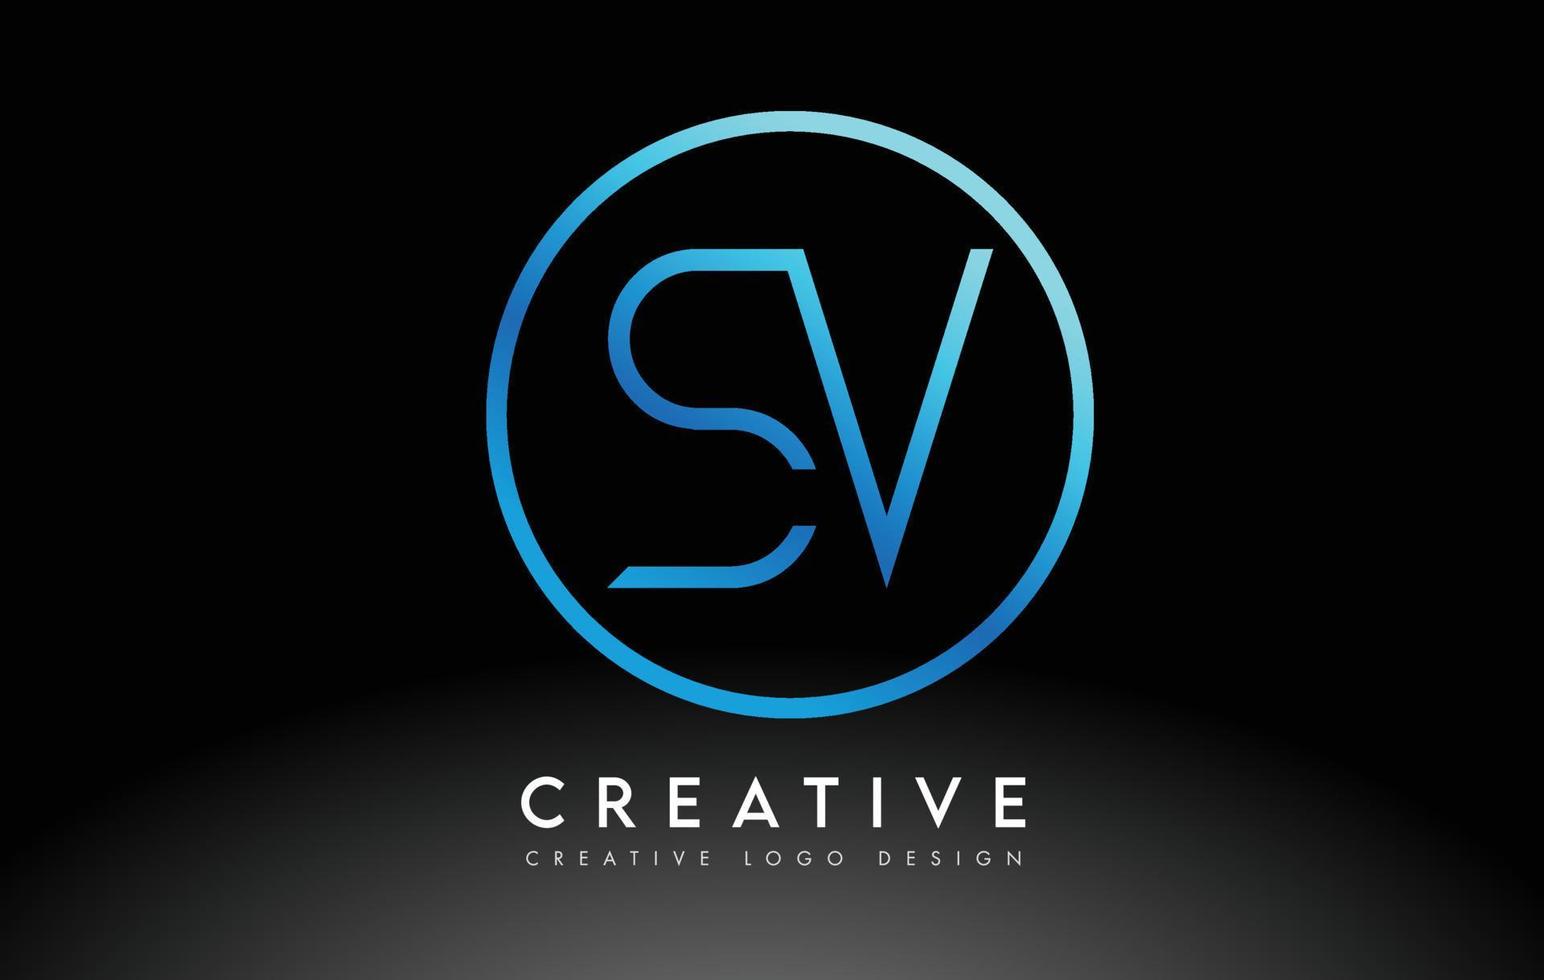 design de logotipo de letras sv azul neon slim. conceito criativo de carta limpa simples. vetor